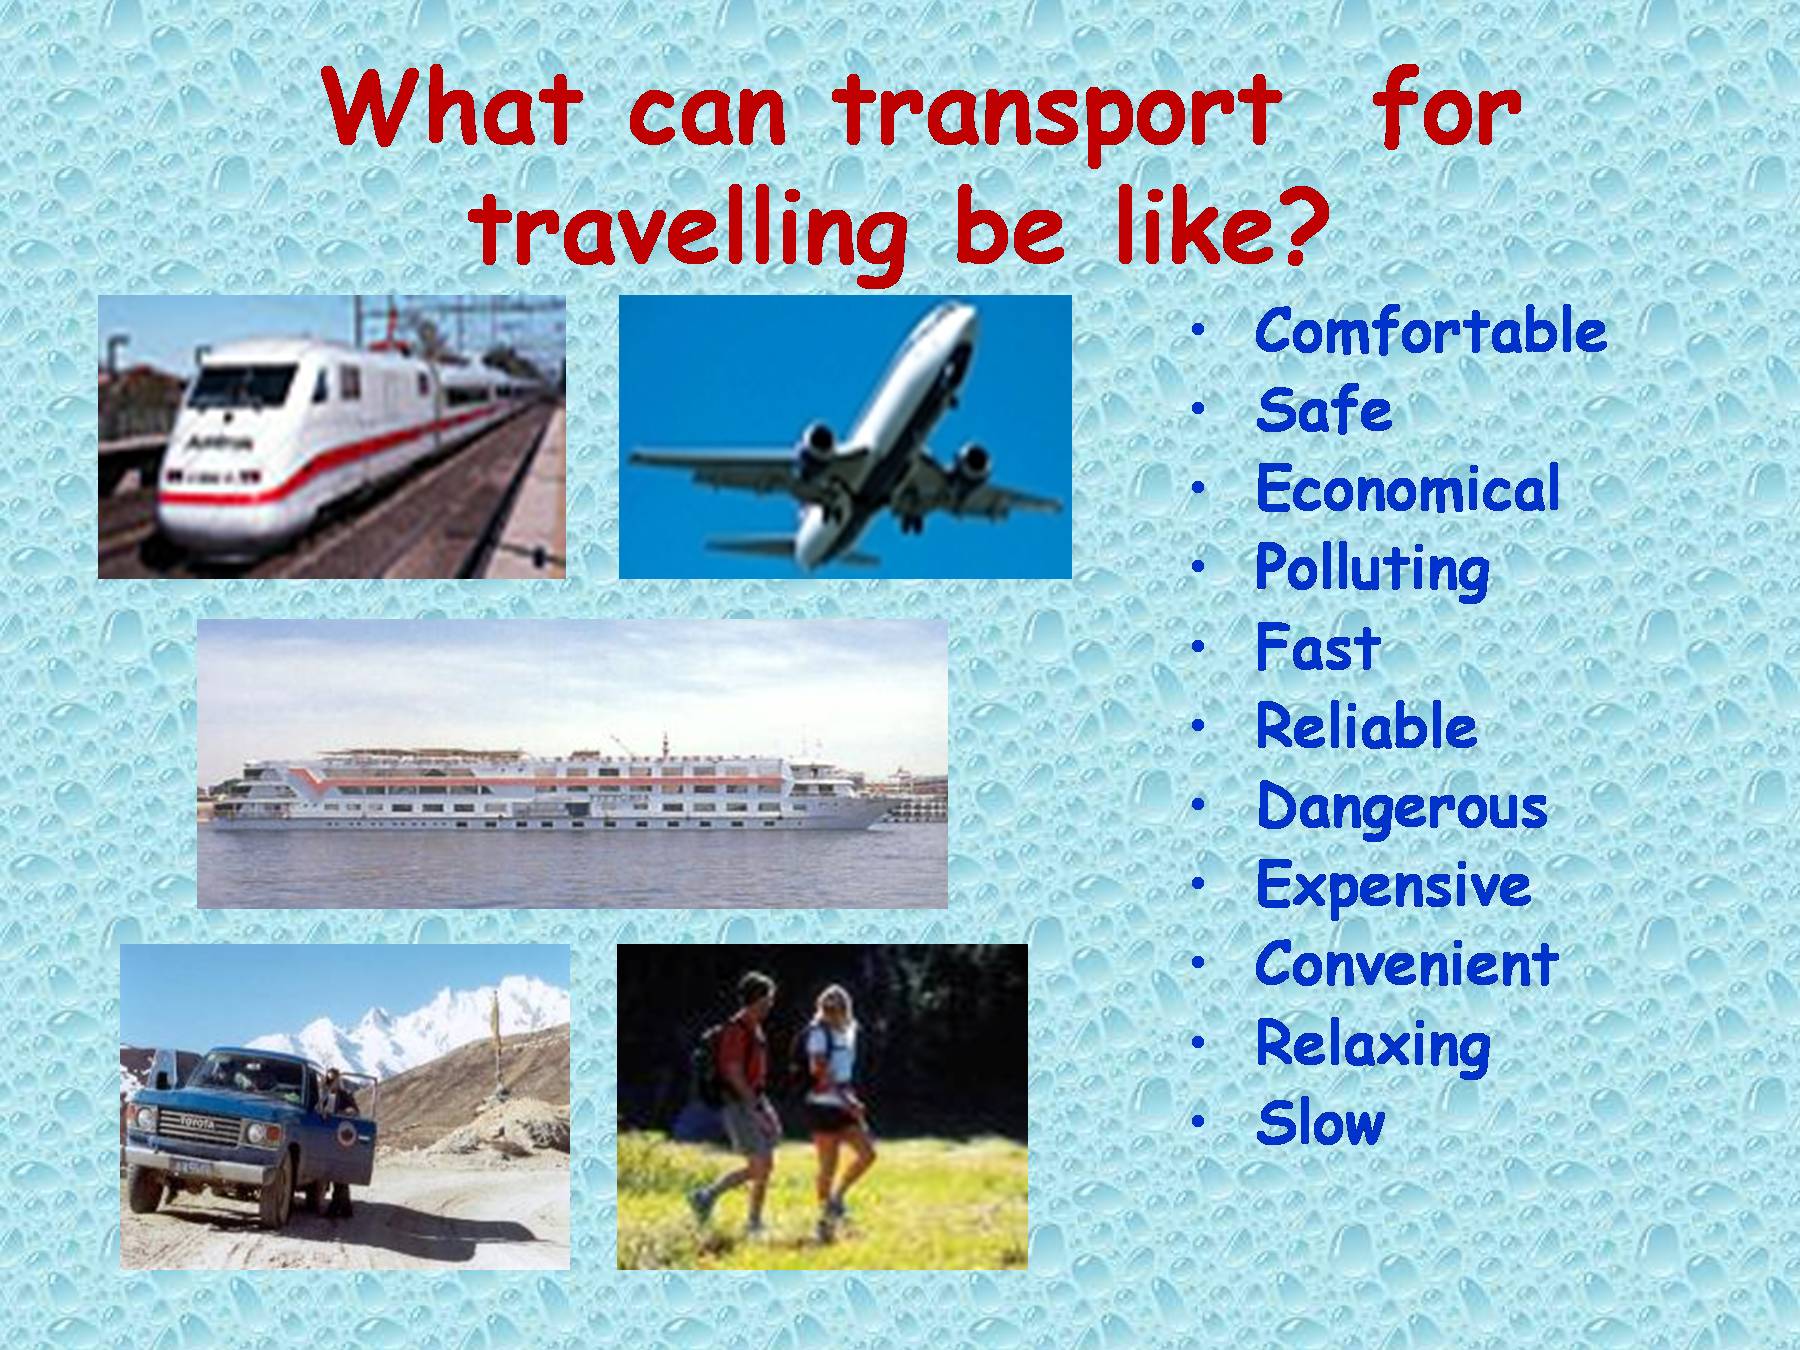 Travelling is expensive. Презентация на тему travelling. Английский проект на тему путешествие. Транспорт для путешествий на английском. Ways of travelling топик.